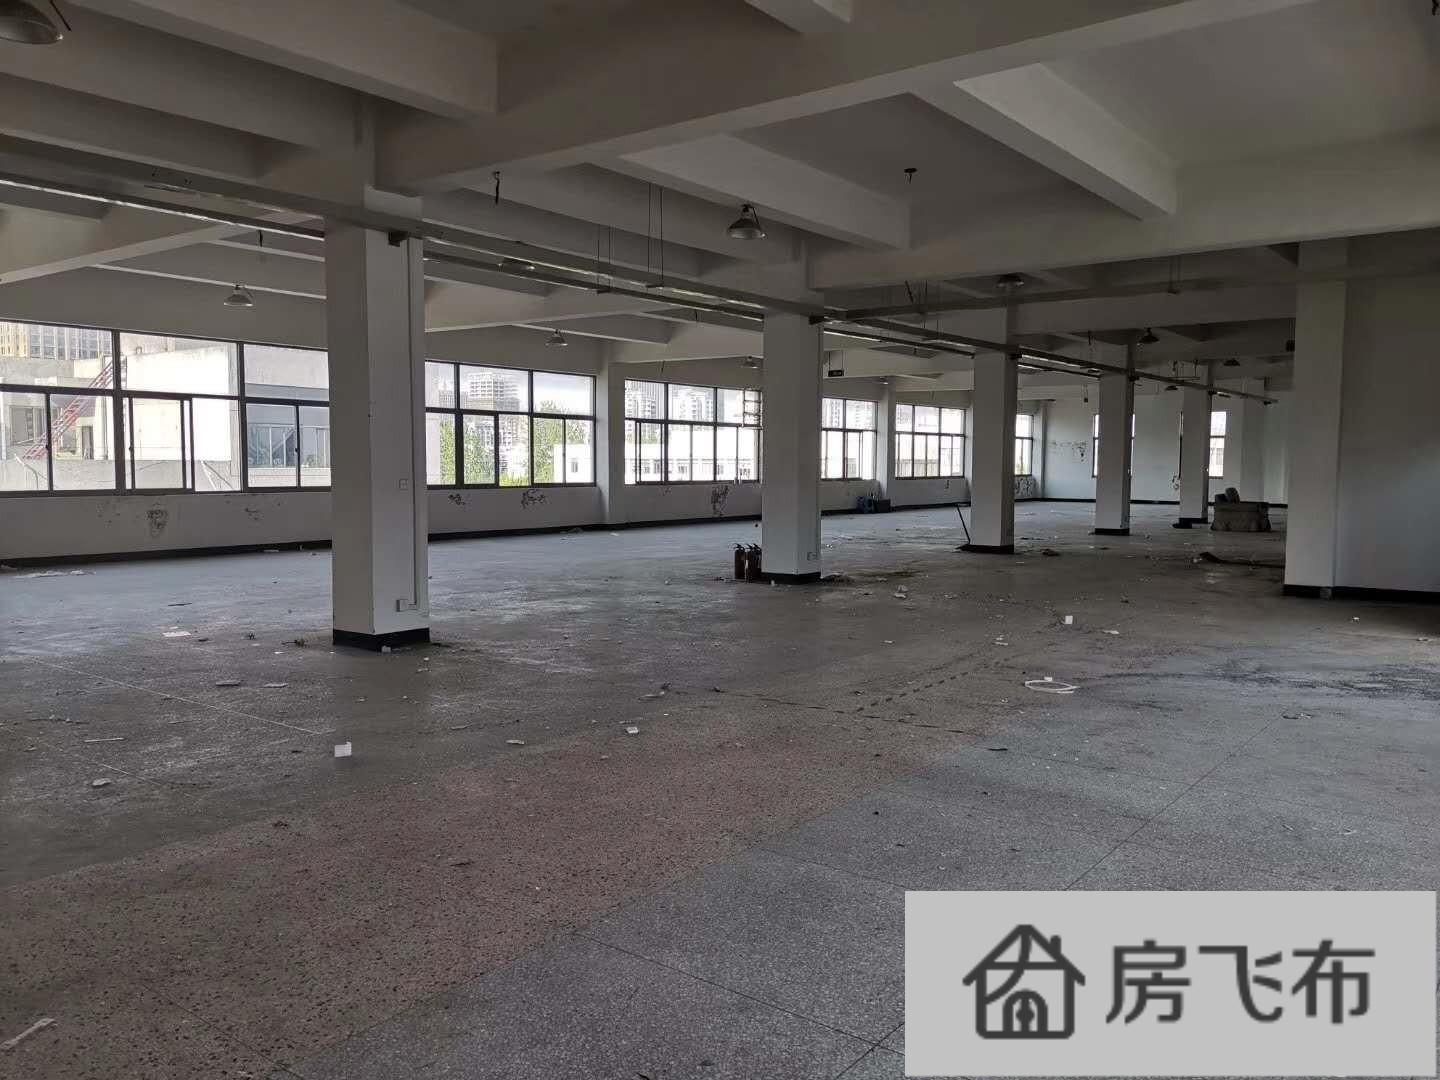 (出租) 滨江900方 层高4.5米适合摄影淘宝仓库等等